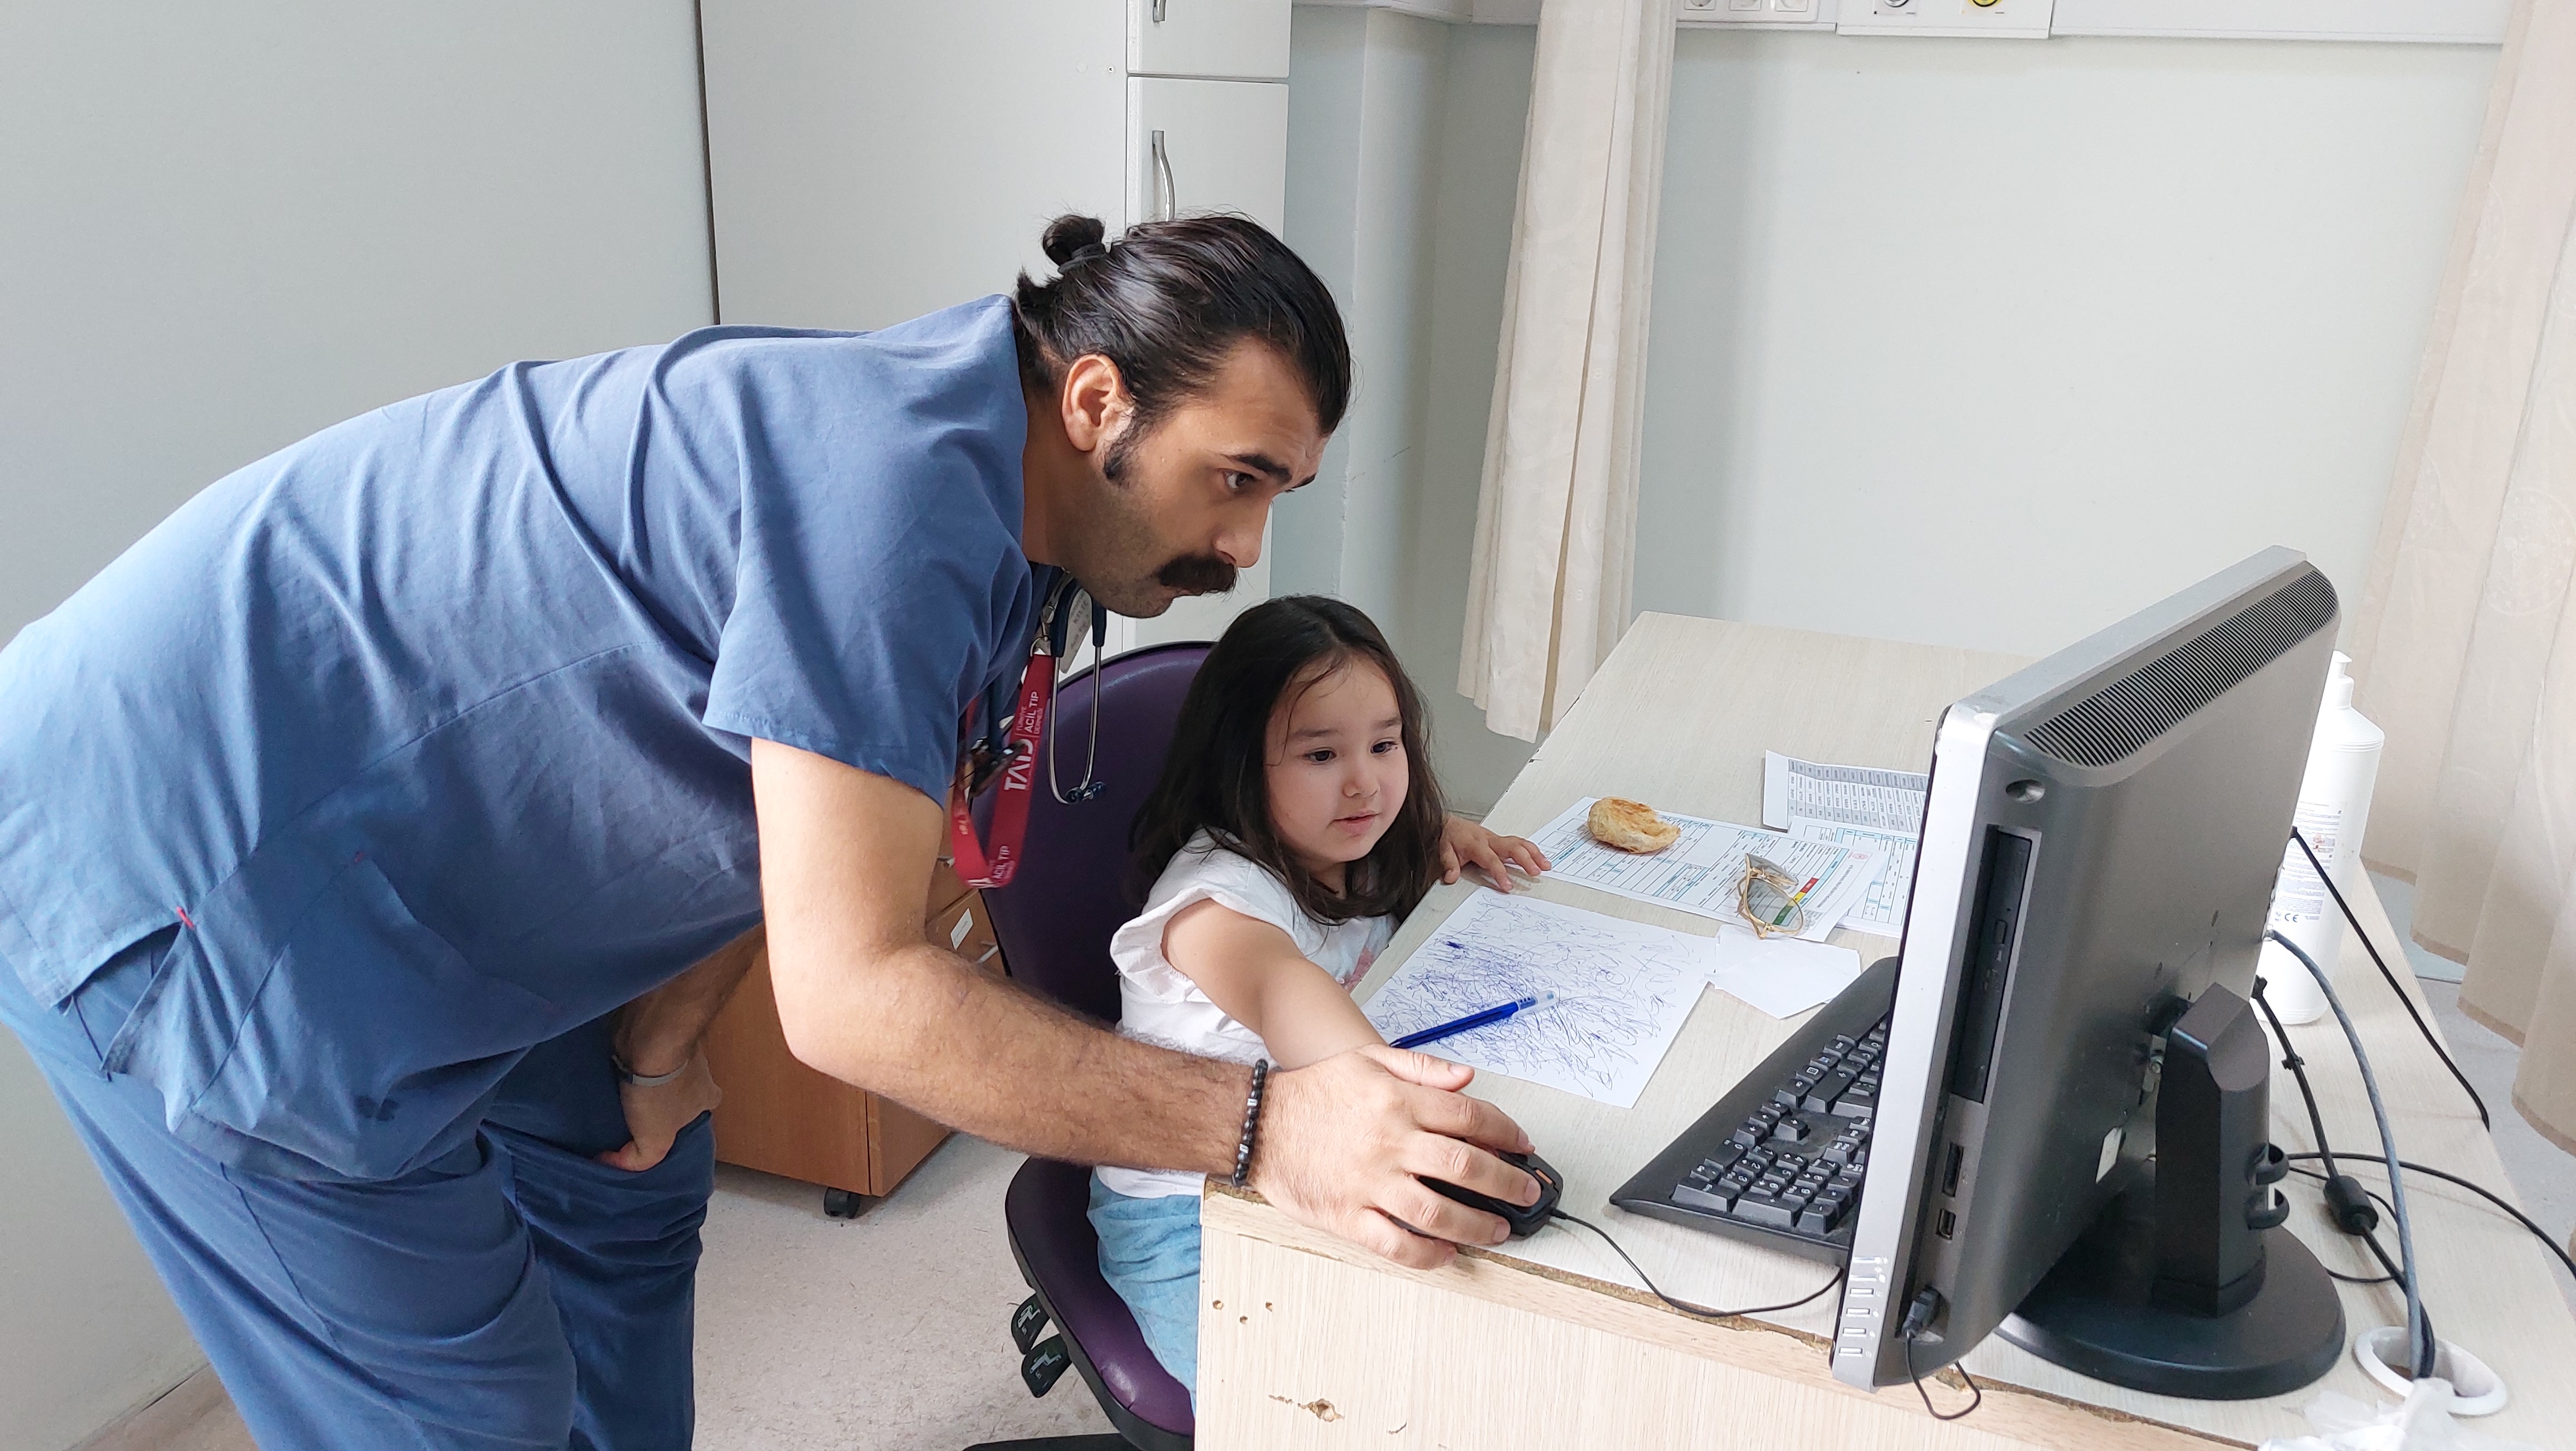 Samsun'da yaralanan kız çocuğuna doktor şefkati